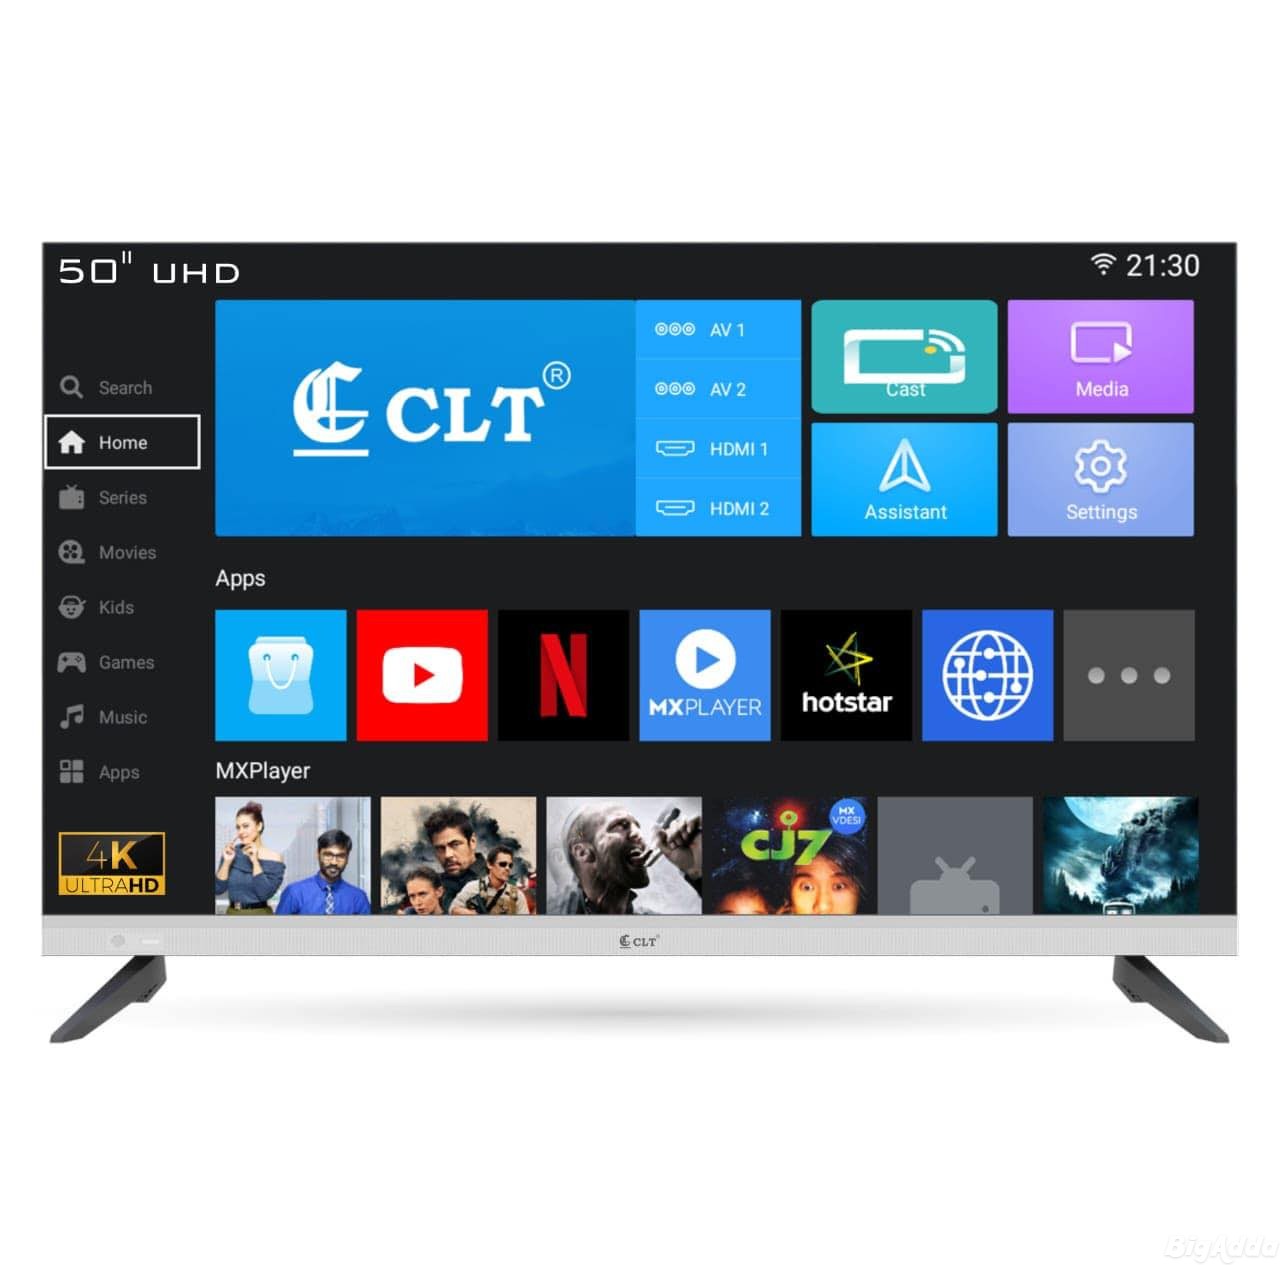 Premium LED TV Manufacturers in Delhi Quality Prod